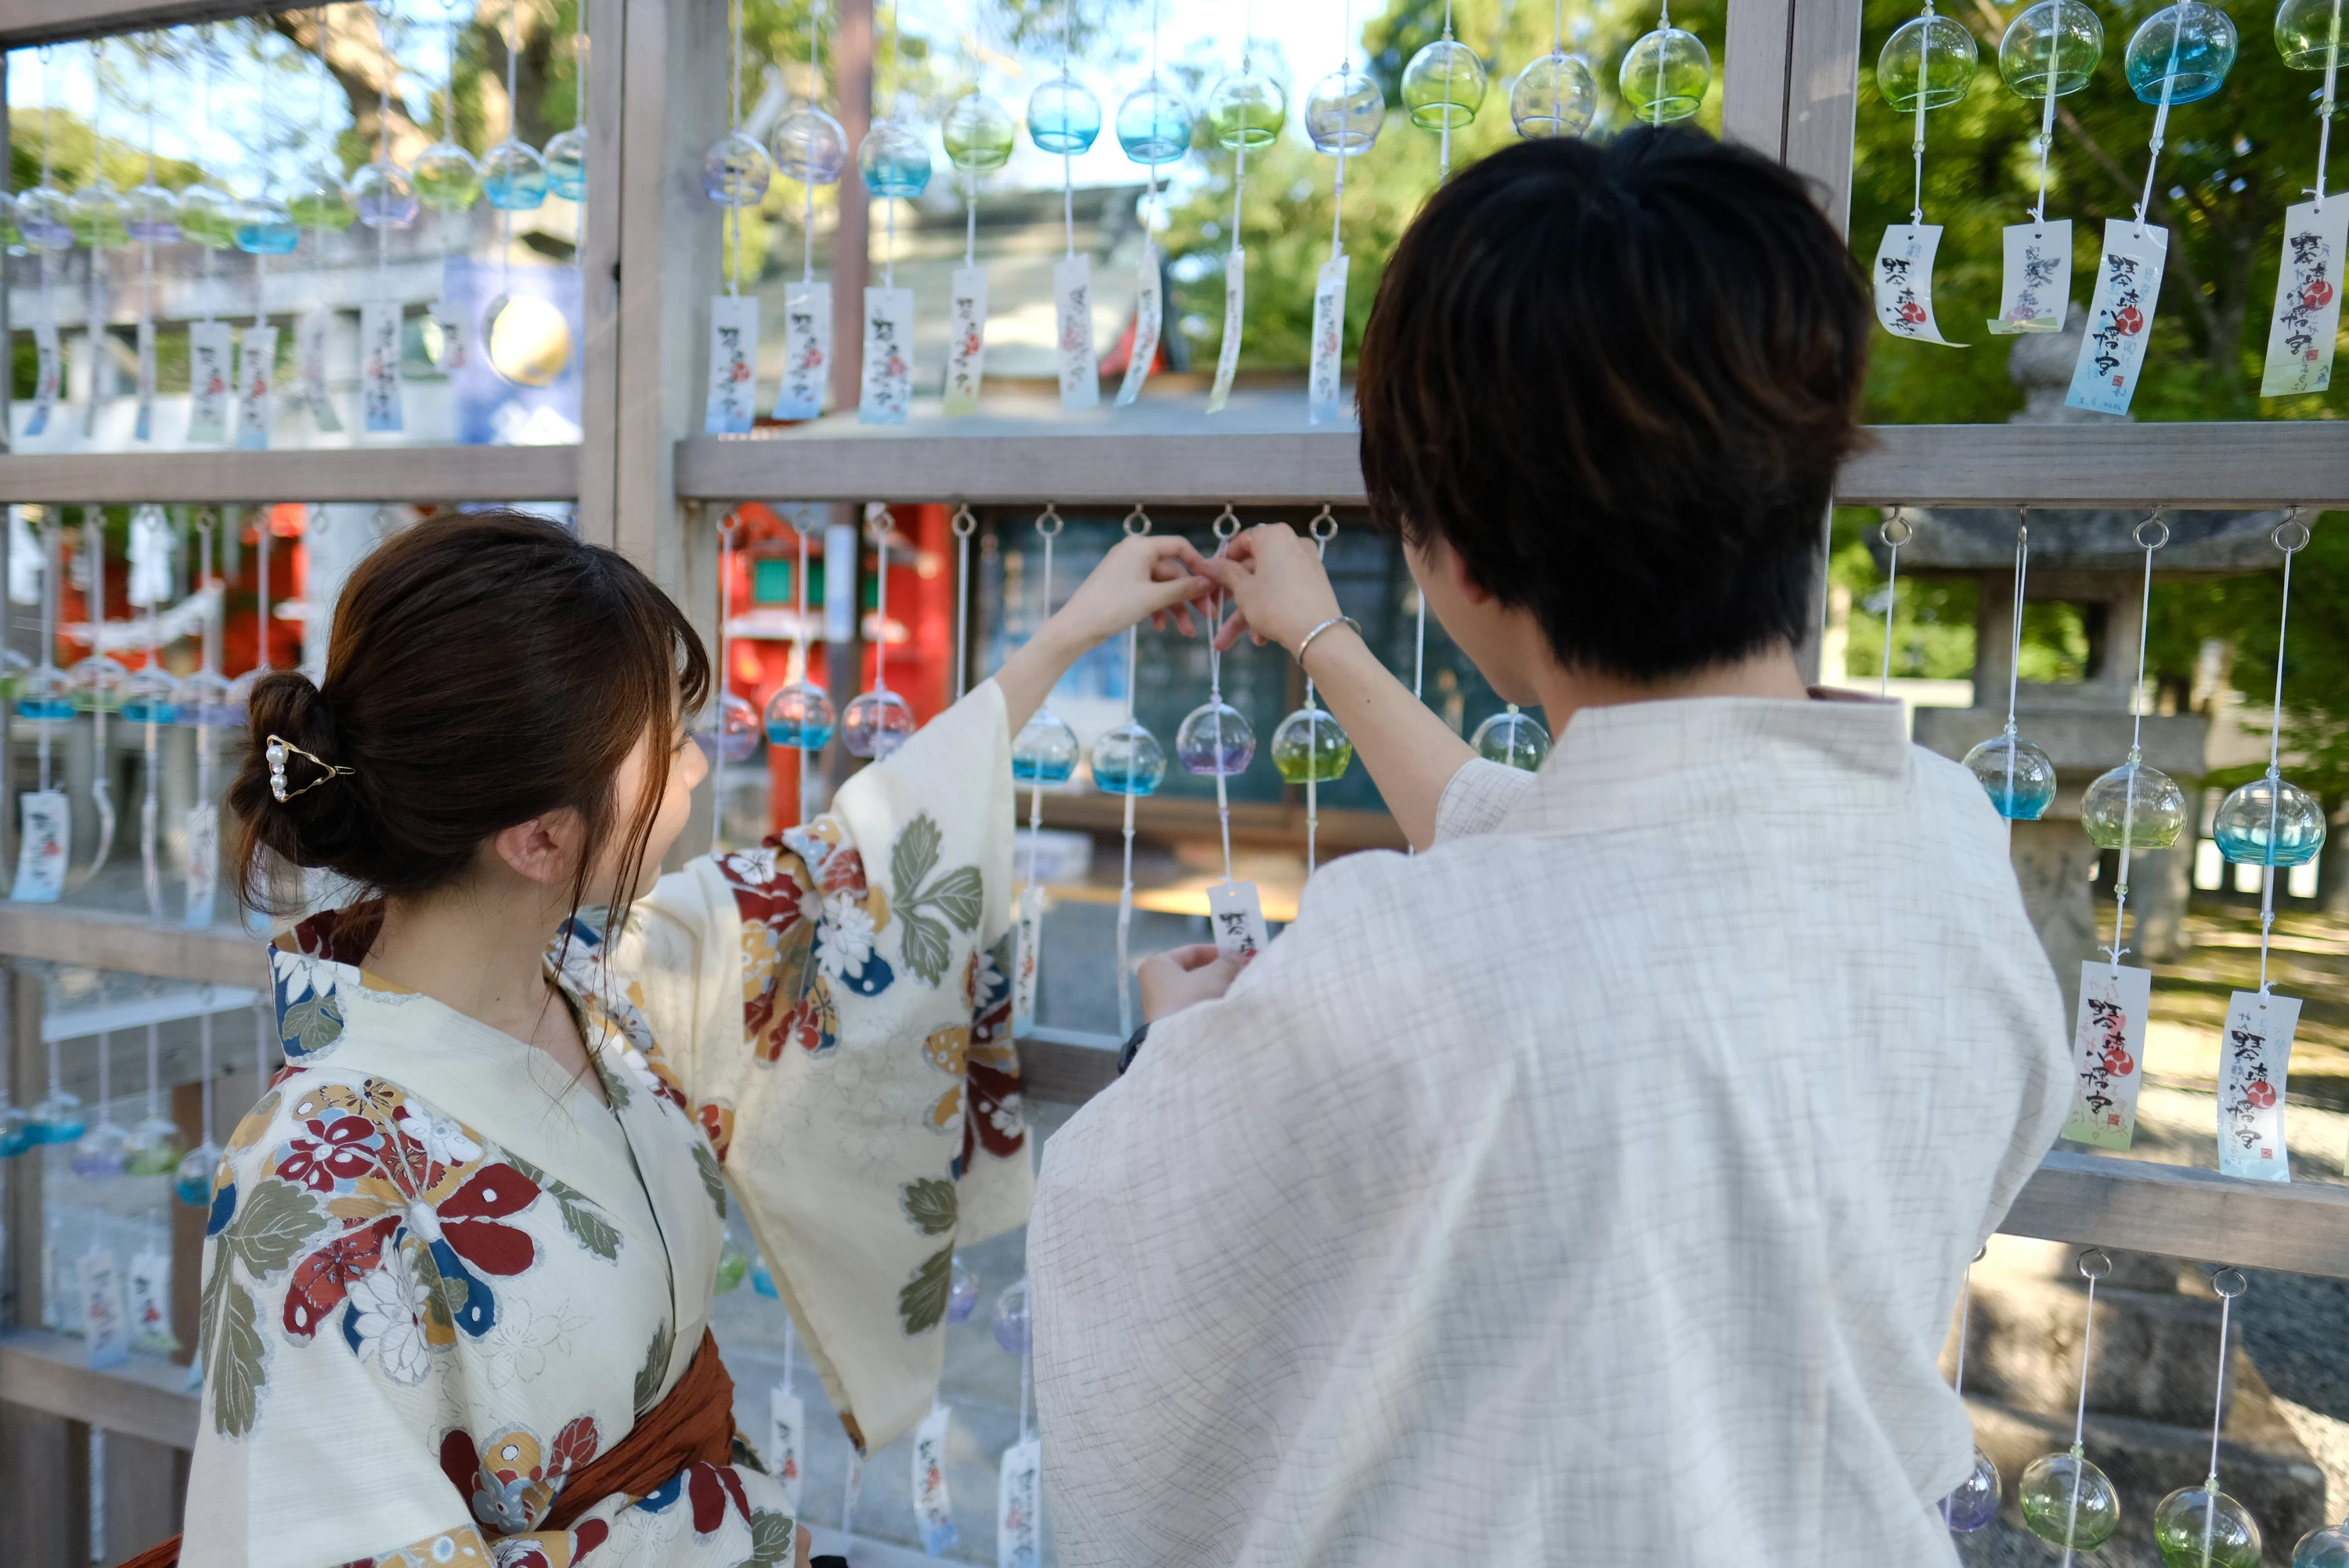 「風鈴まつり」は、境内に約3,000個のカラフルな風鈴が飾られる夏の風物詩